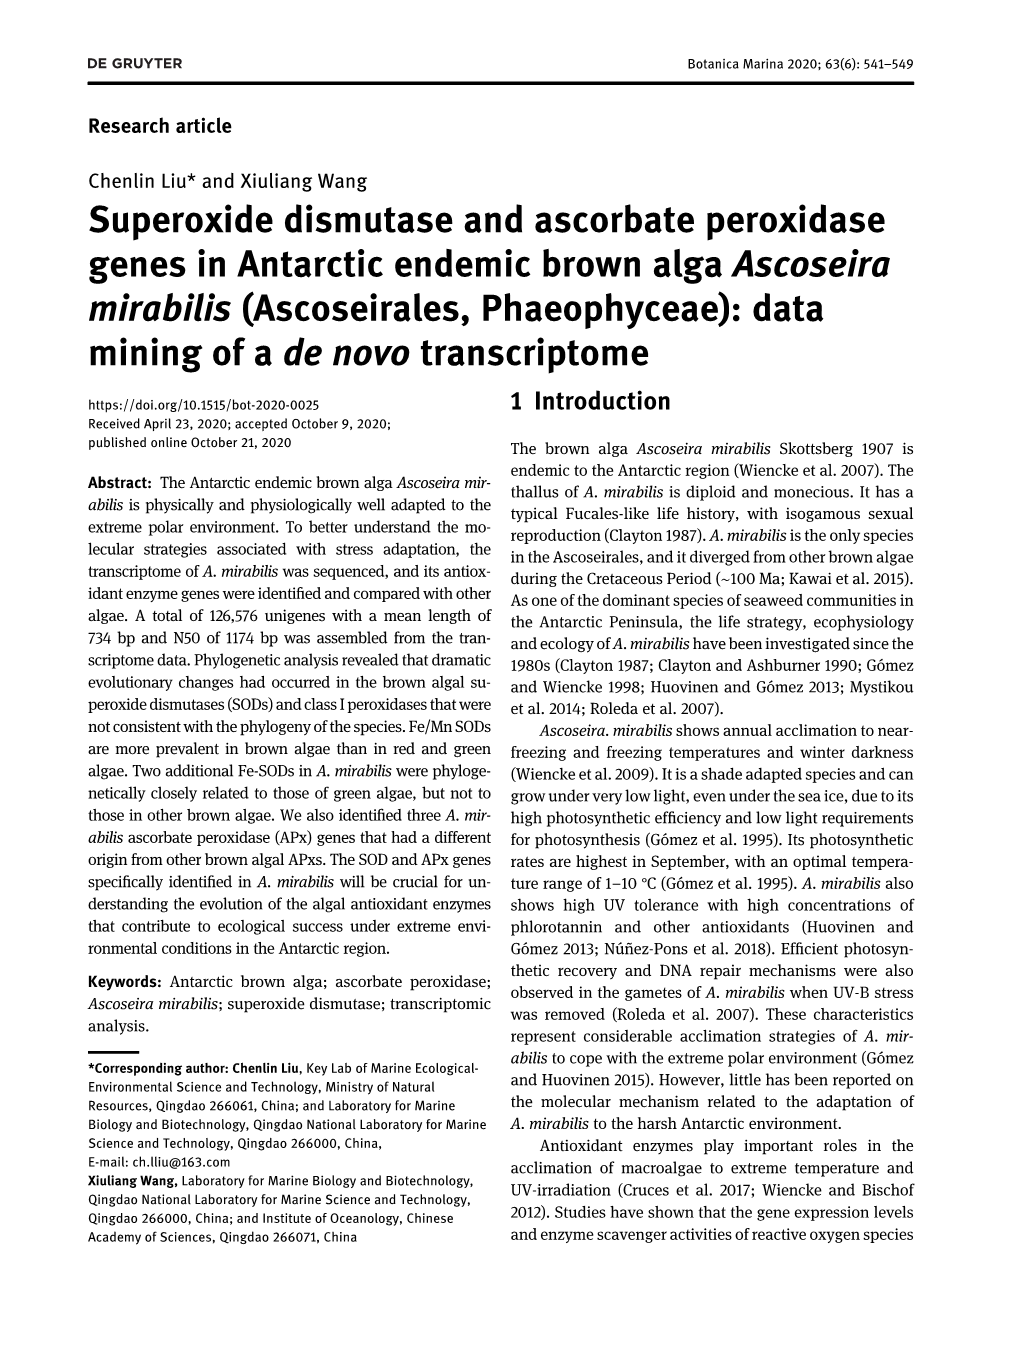 Superoxide Dismutase and Ascorbate Peroxidase Genes in Antarctic